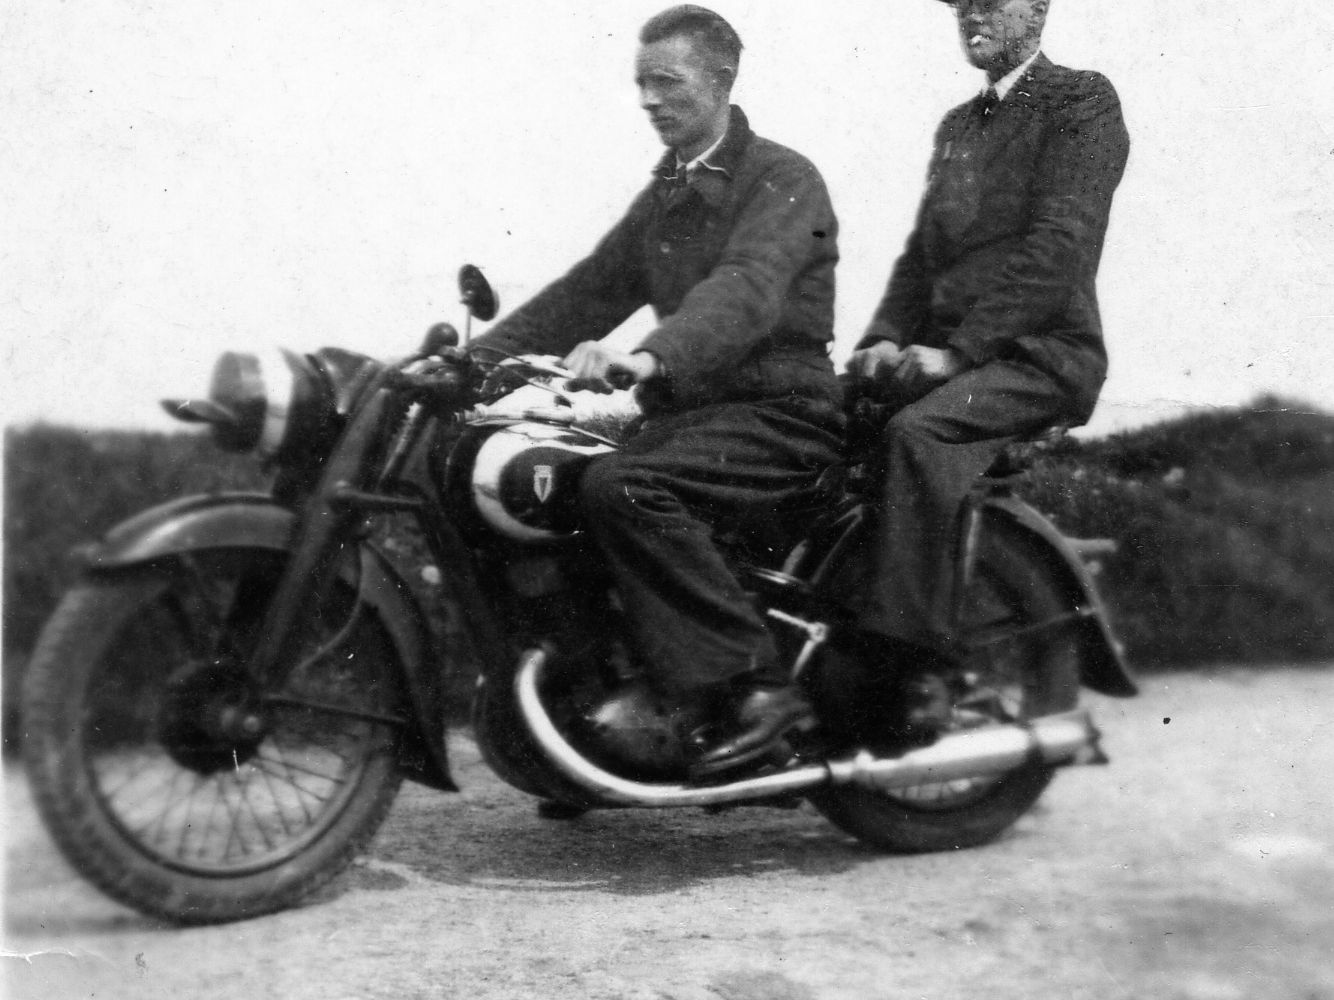 Twee mannen rijden op een motorfiets.